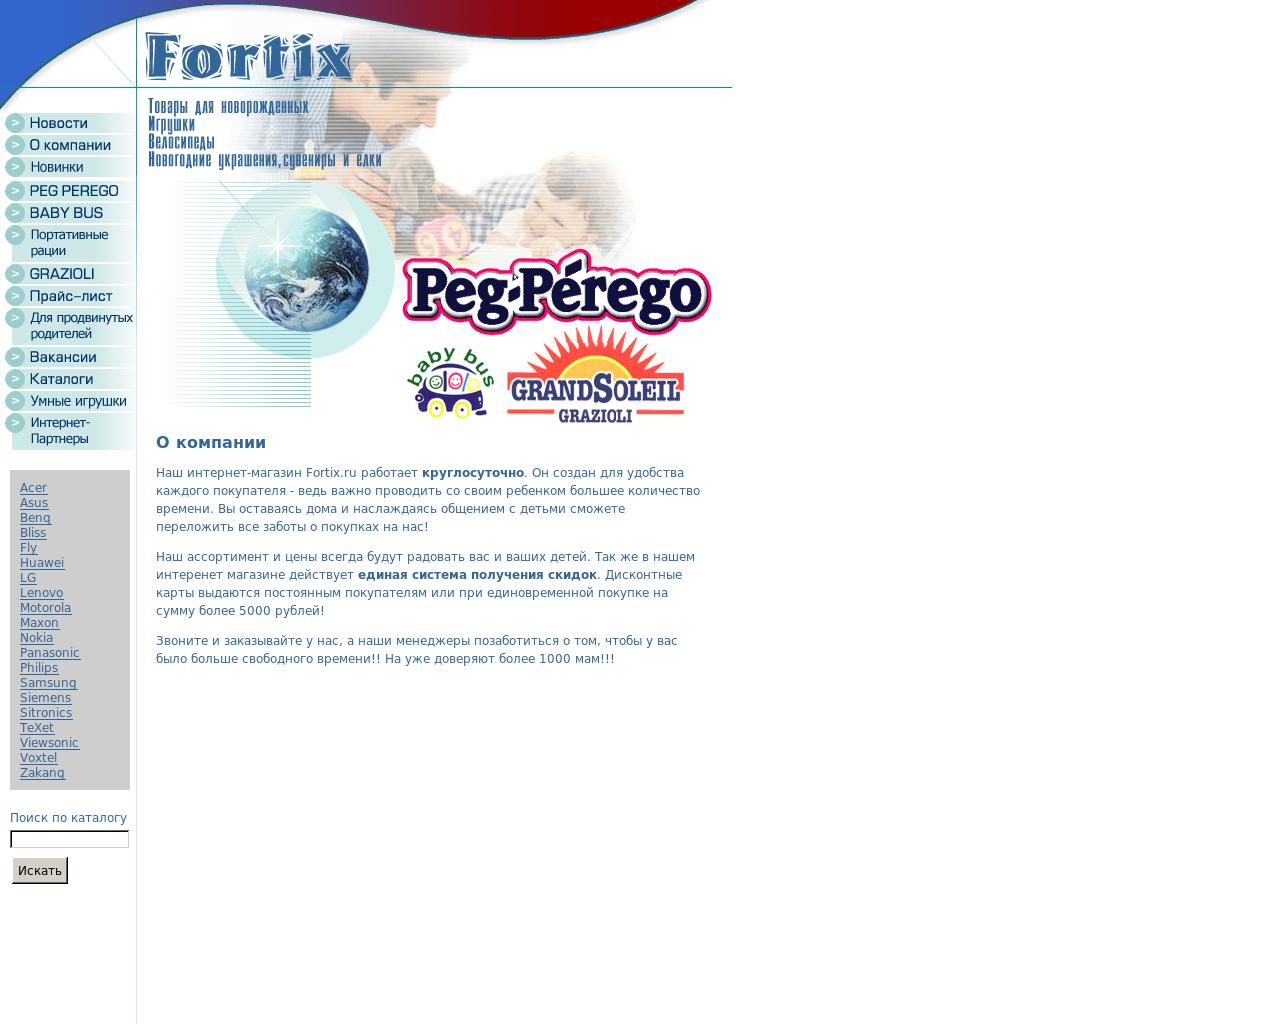 Изображение сайта fortix.ru в разрешении 1280x1024